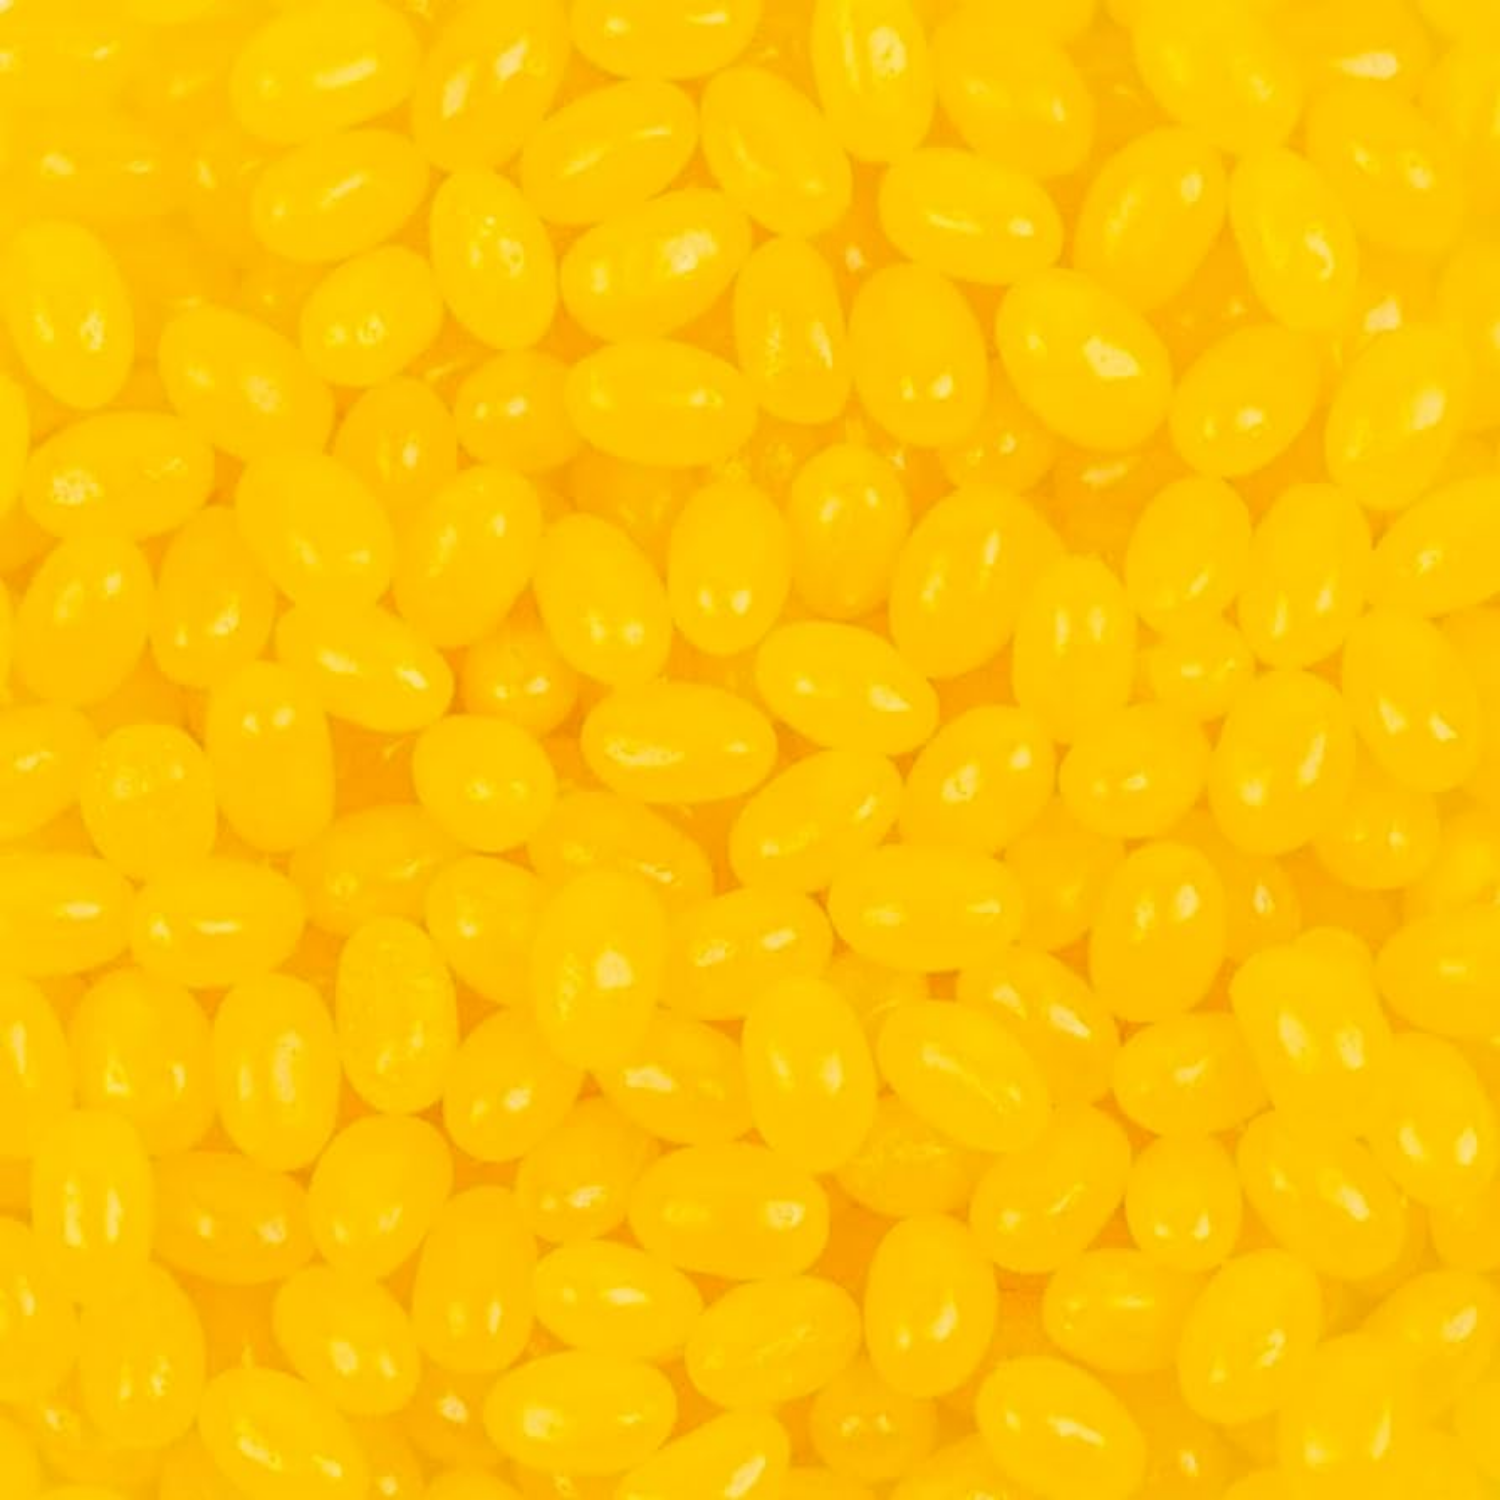 Lemon Jelly Beans